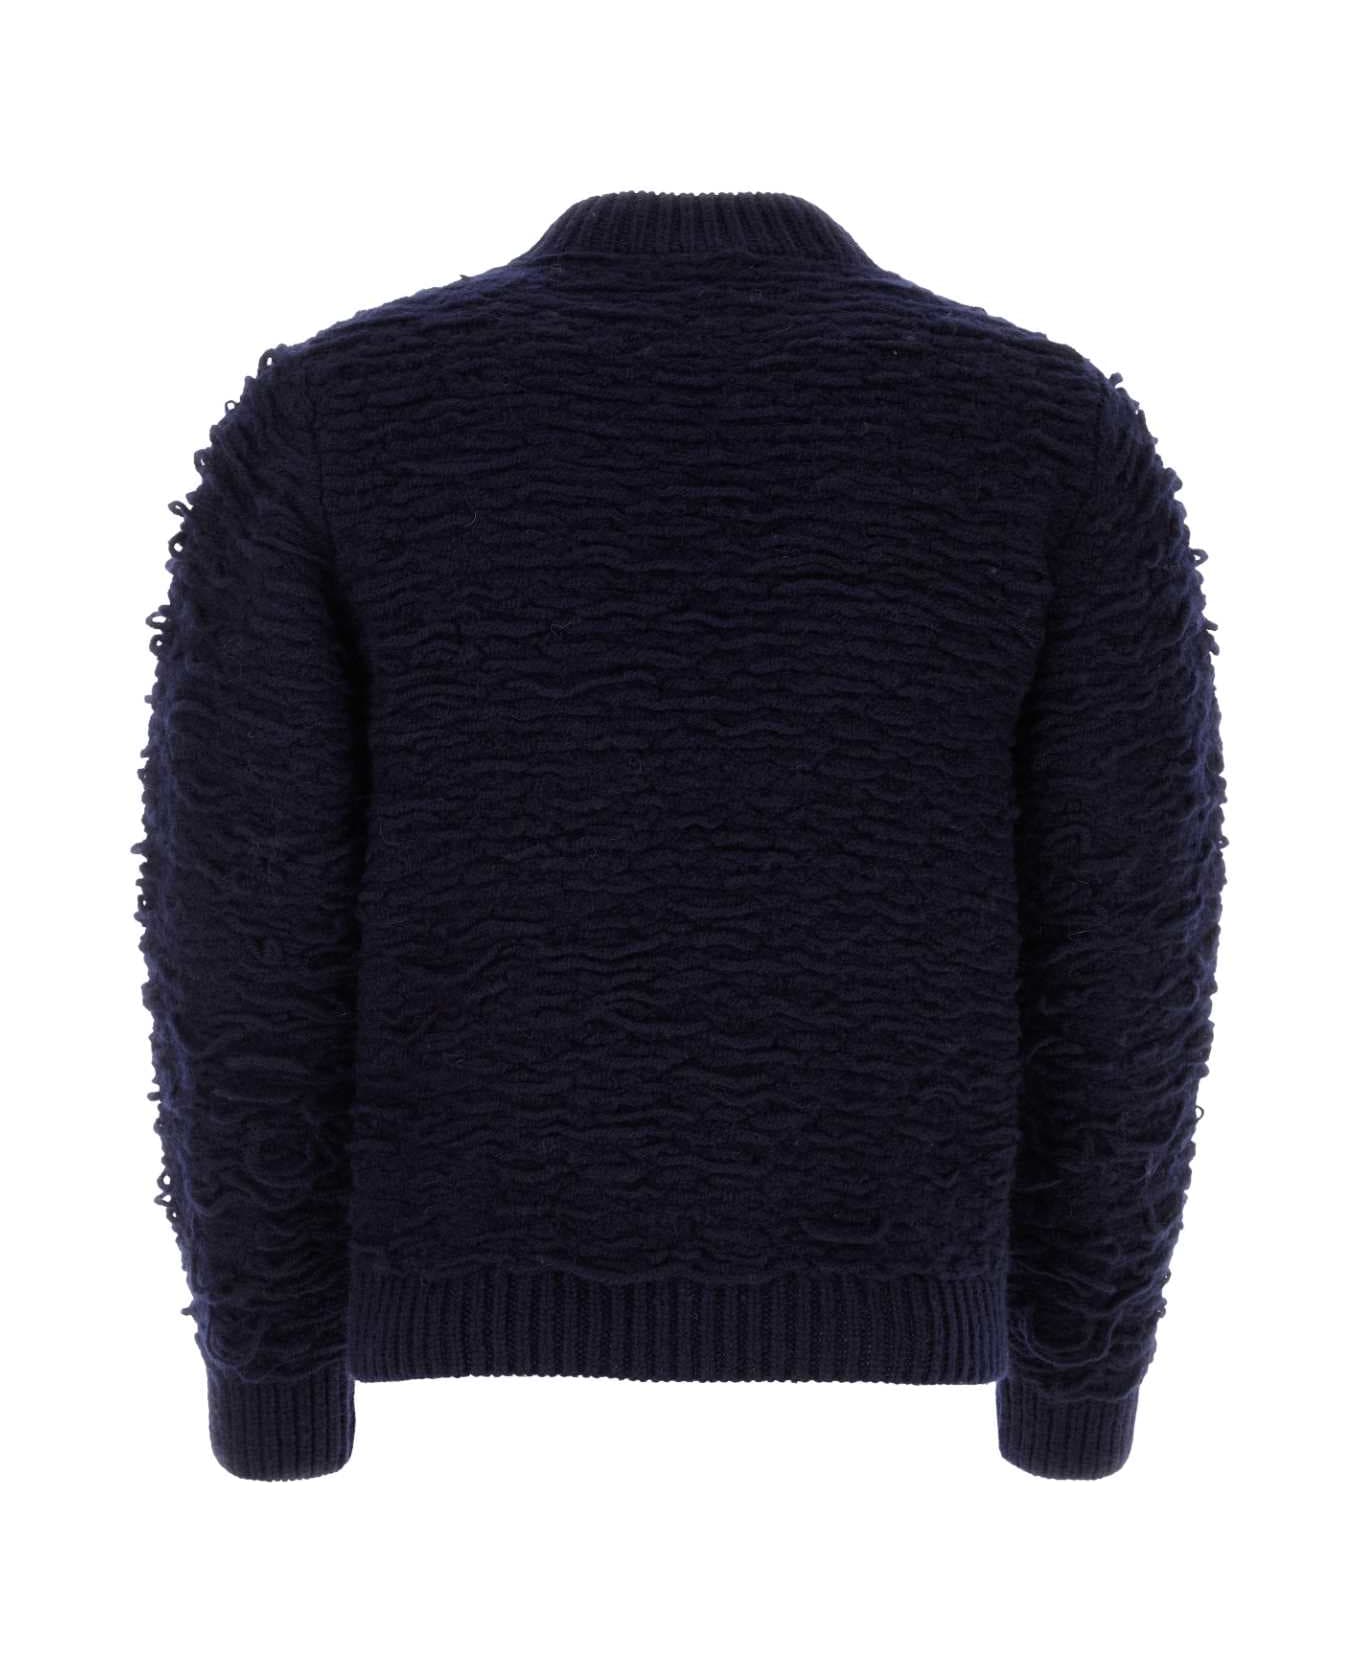 Dries Van Noten Navy Blue Wool Sweater - NAVY